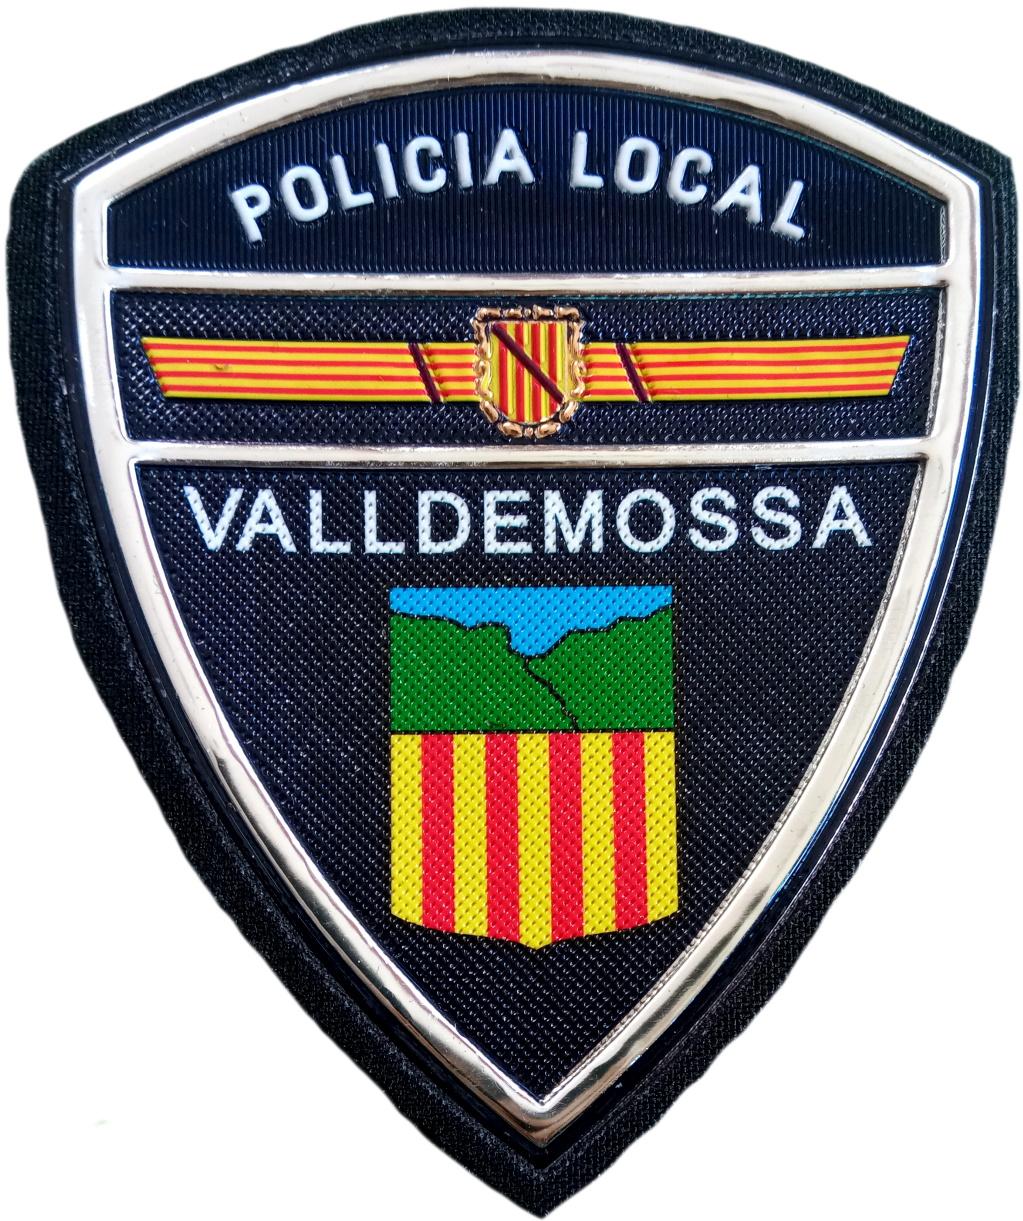 Policía Local Valldemossa parche insignia emblema distintivo